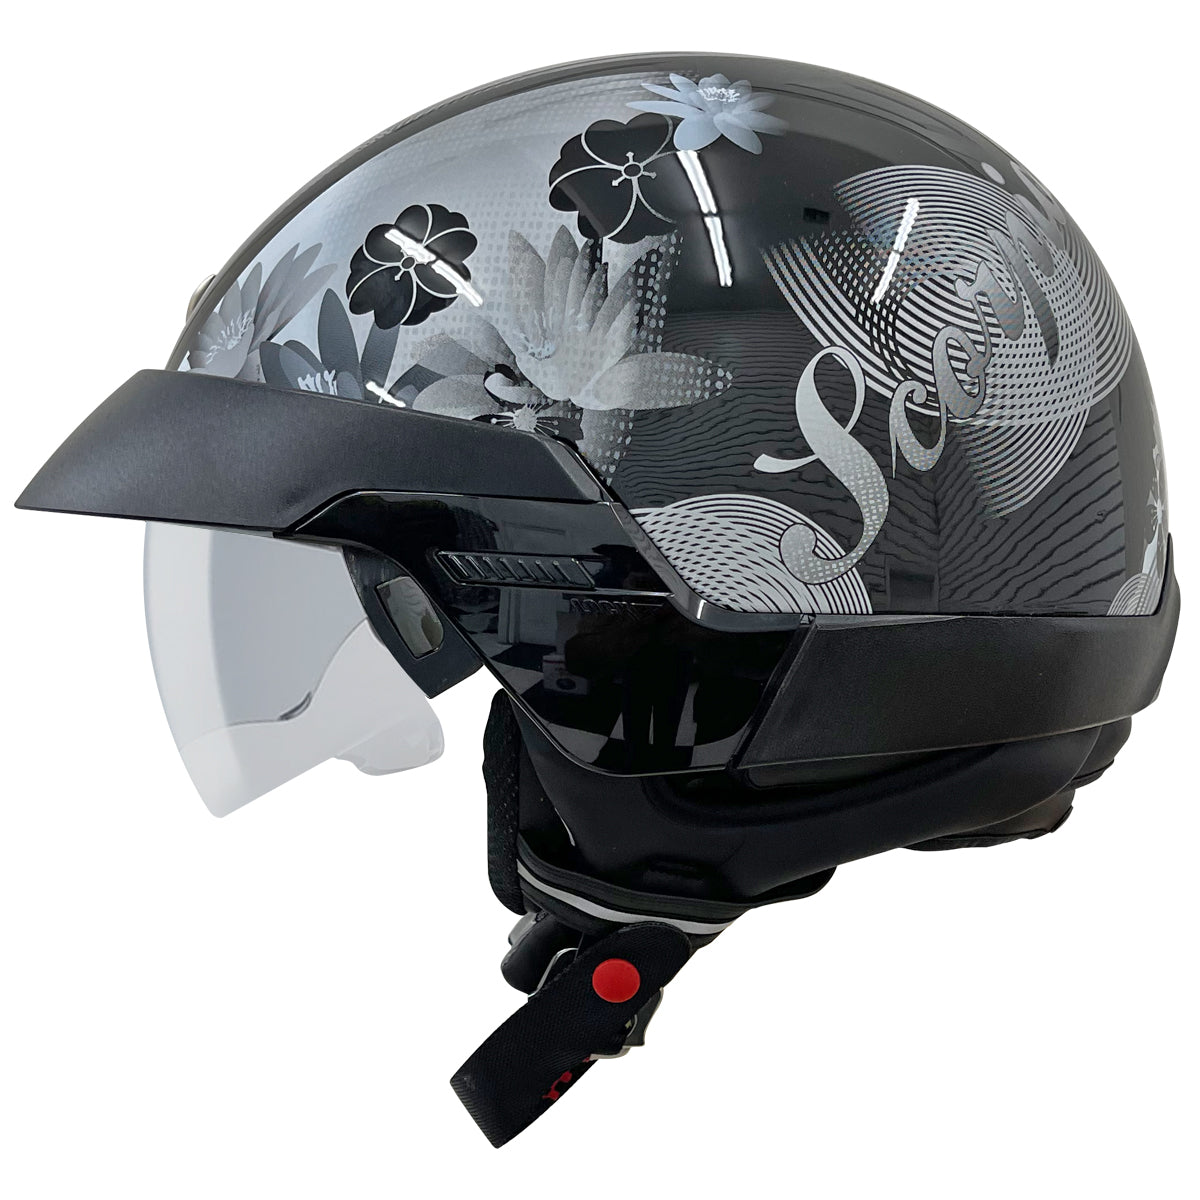 Outlaw Helmets T70 Glossy Black Purple Butterfly Motorcycle Half Helmet for Men & Women with Sun Visor Dot Approved - Adult Unisex Skull Cap for